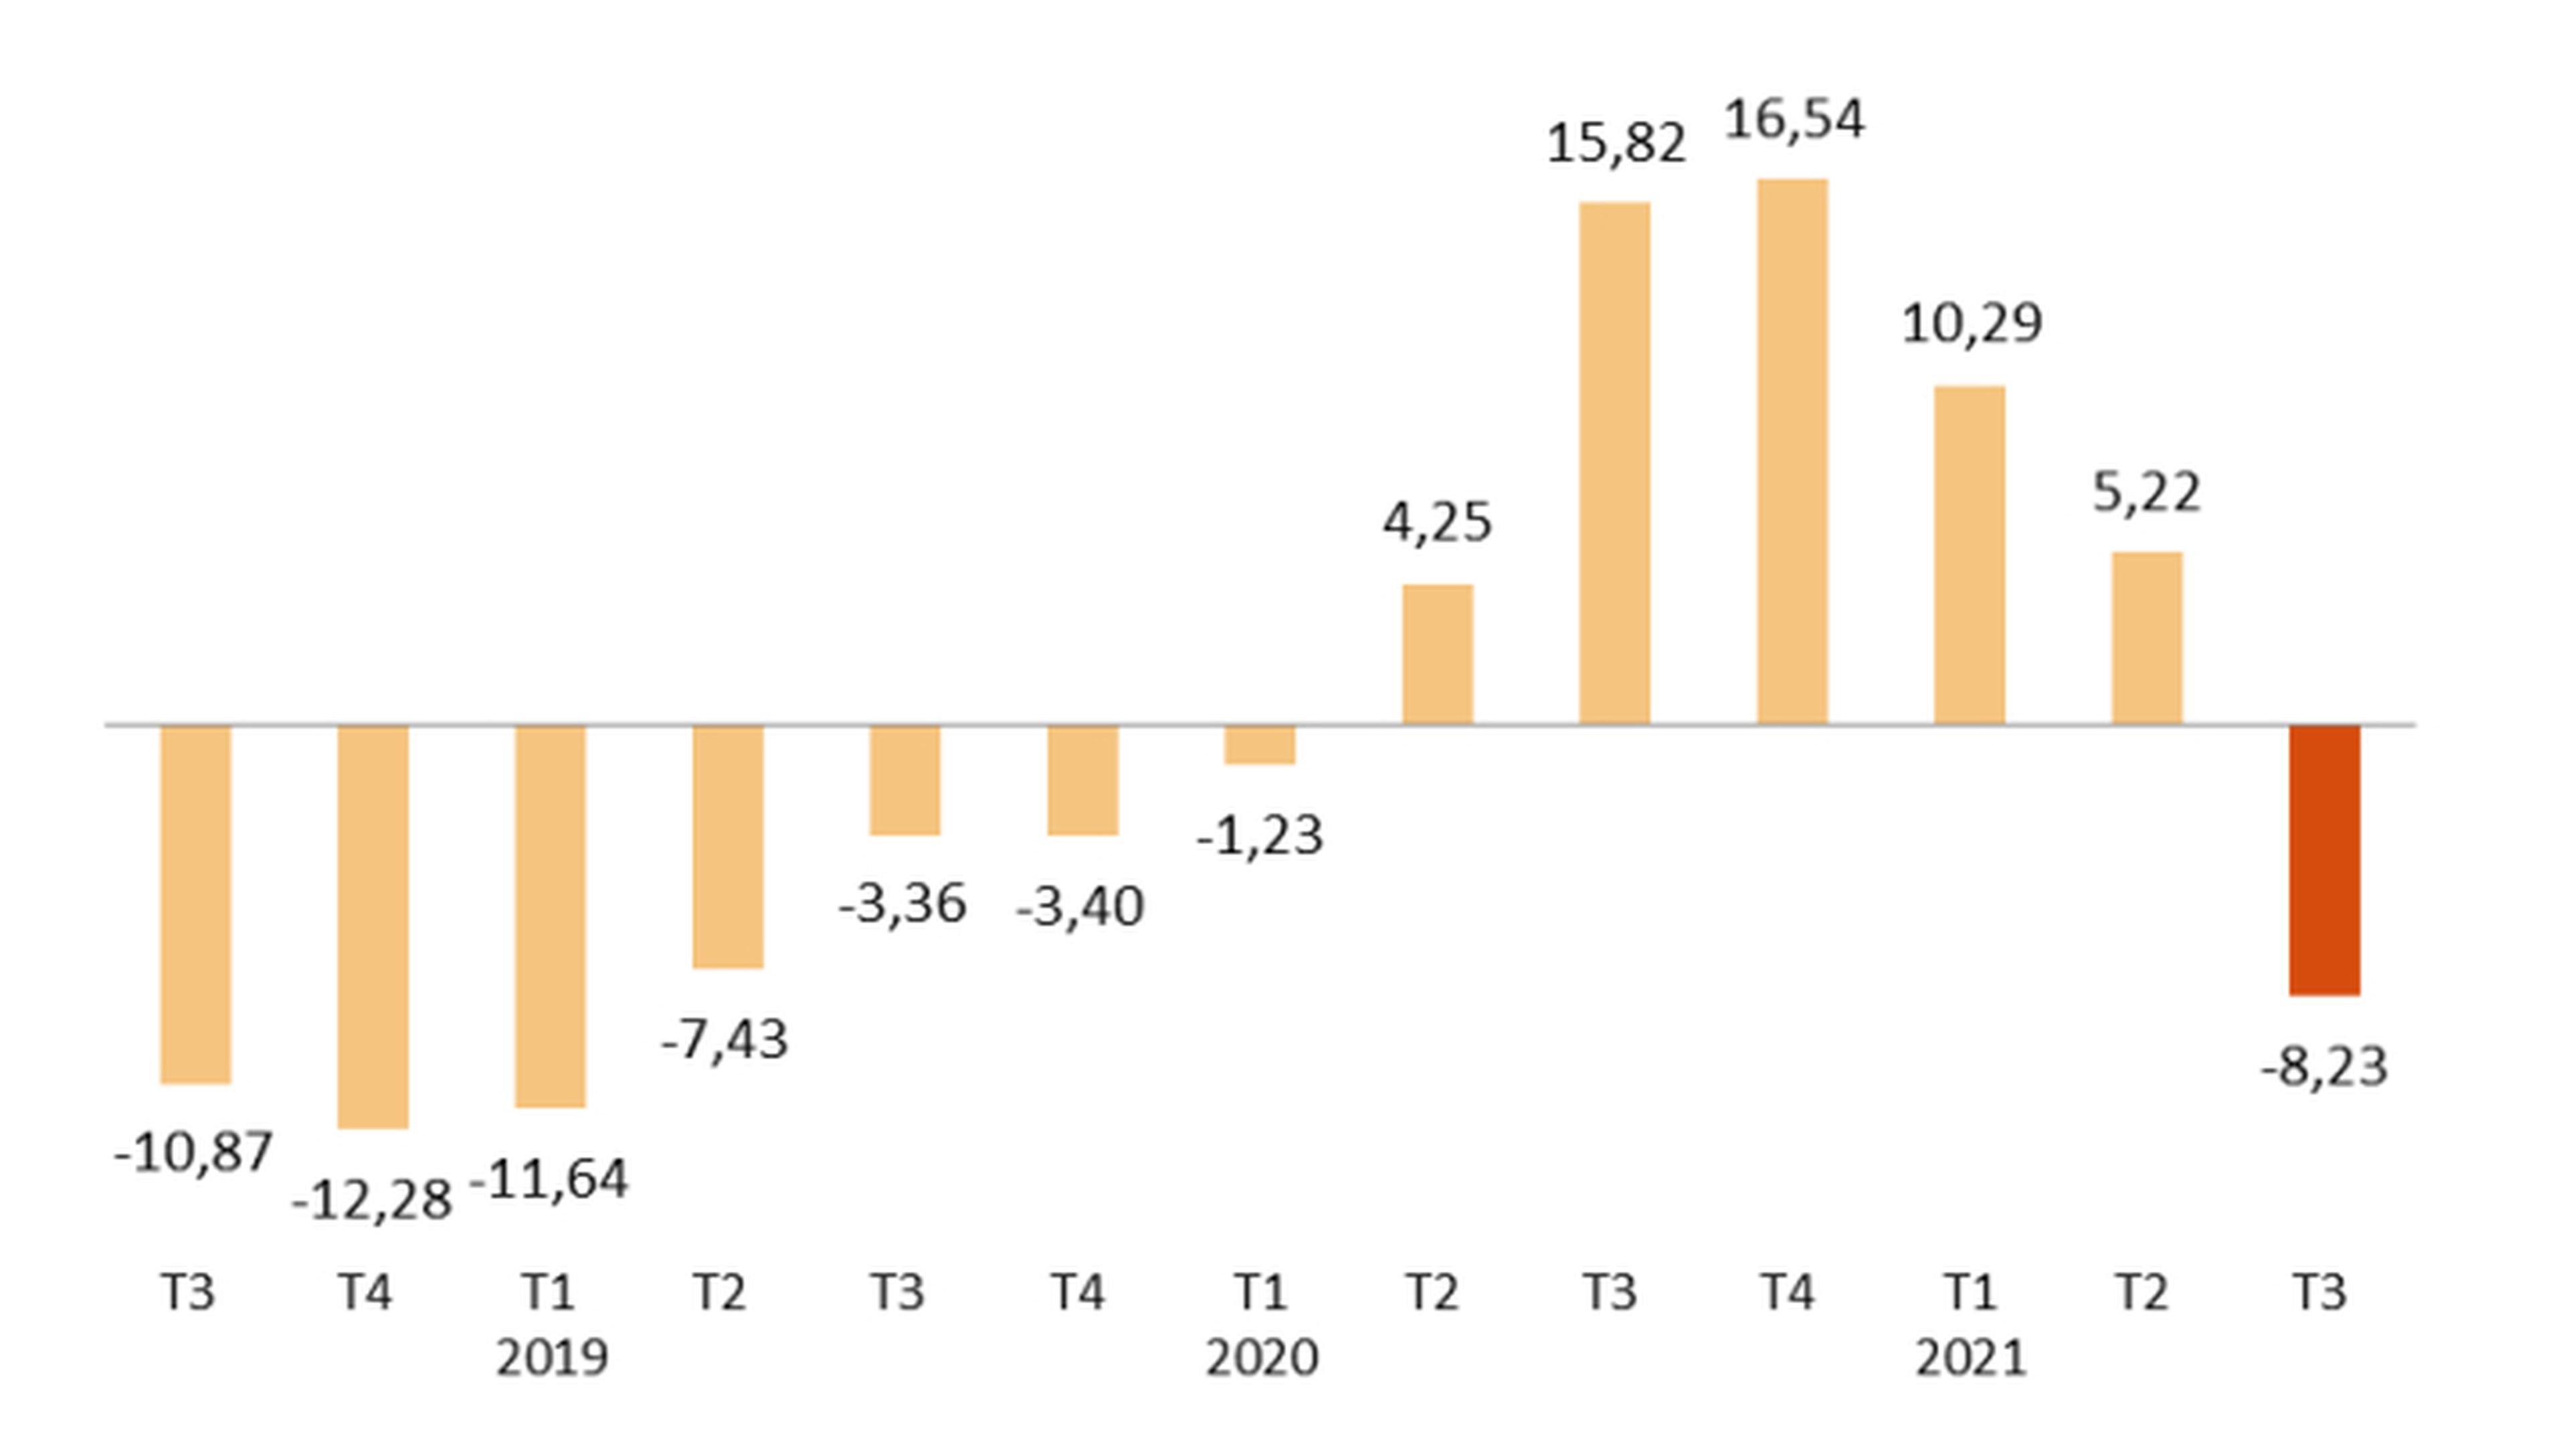 Evolución de la tasa anual de paro desde 2019 hasta 2021